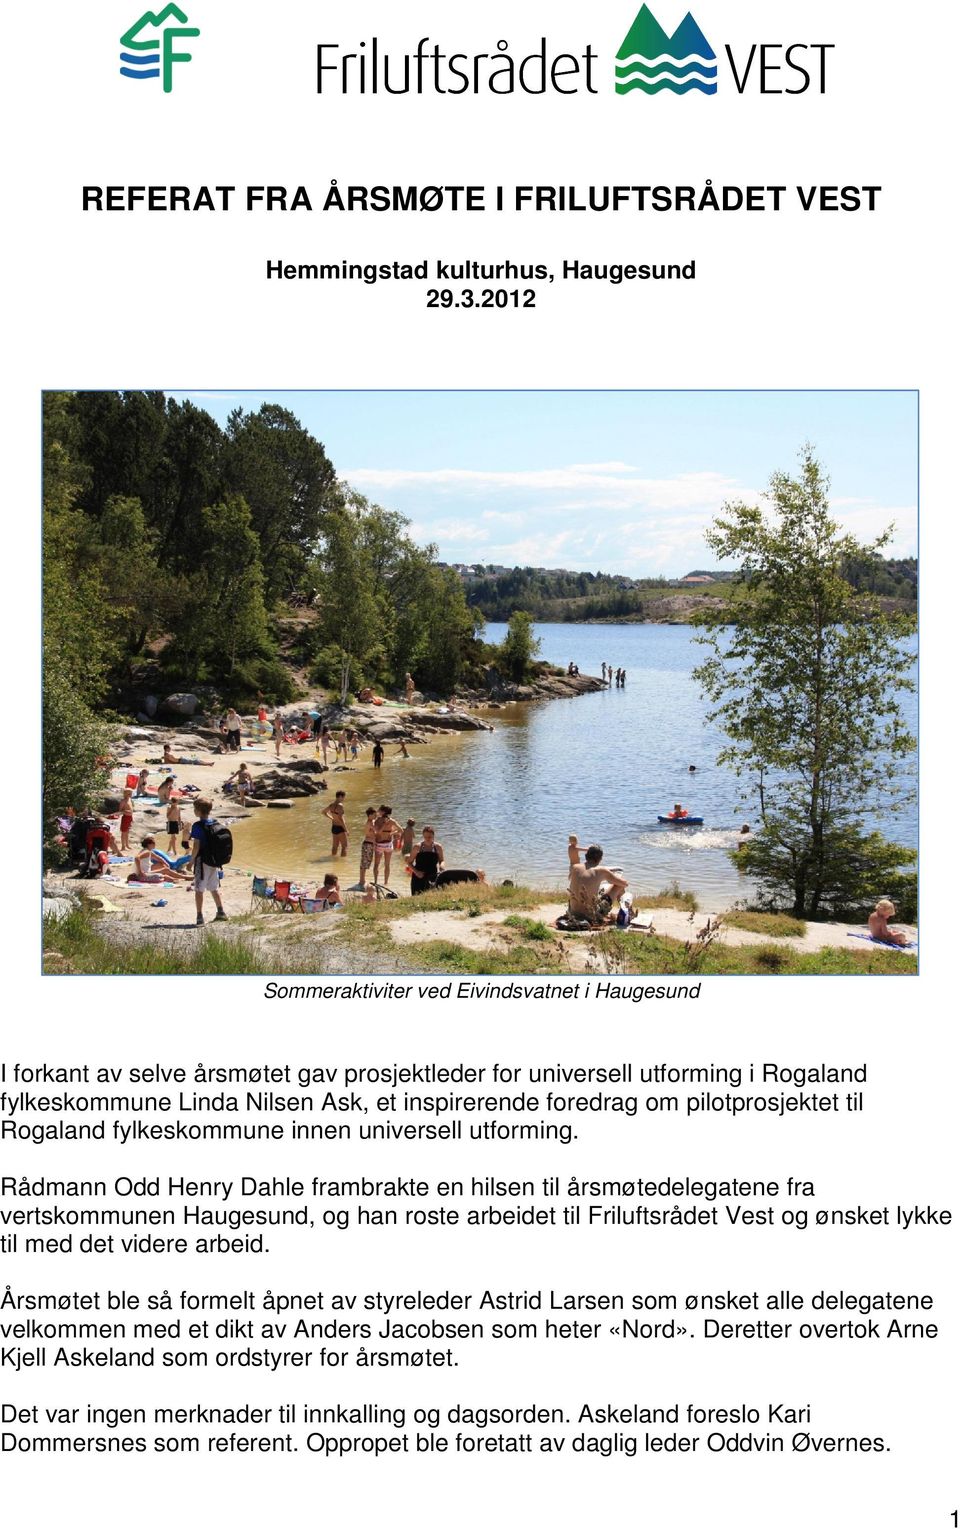 pilotprosjektet til Rogaland fylkeskommune innen universell utforming.